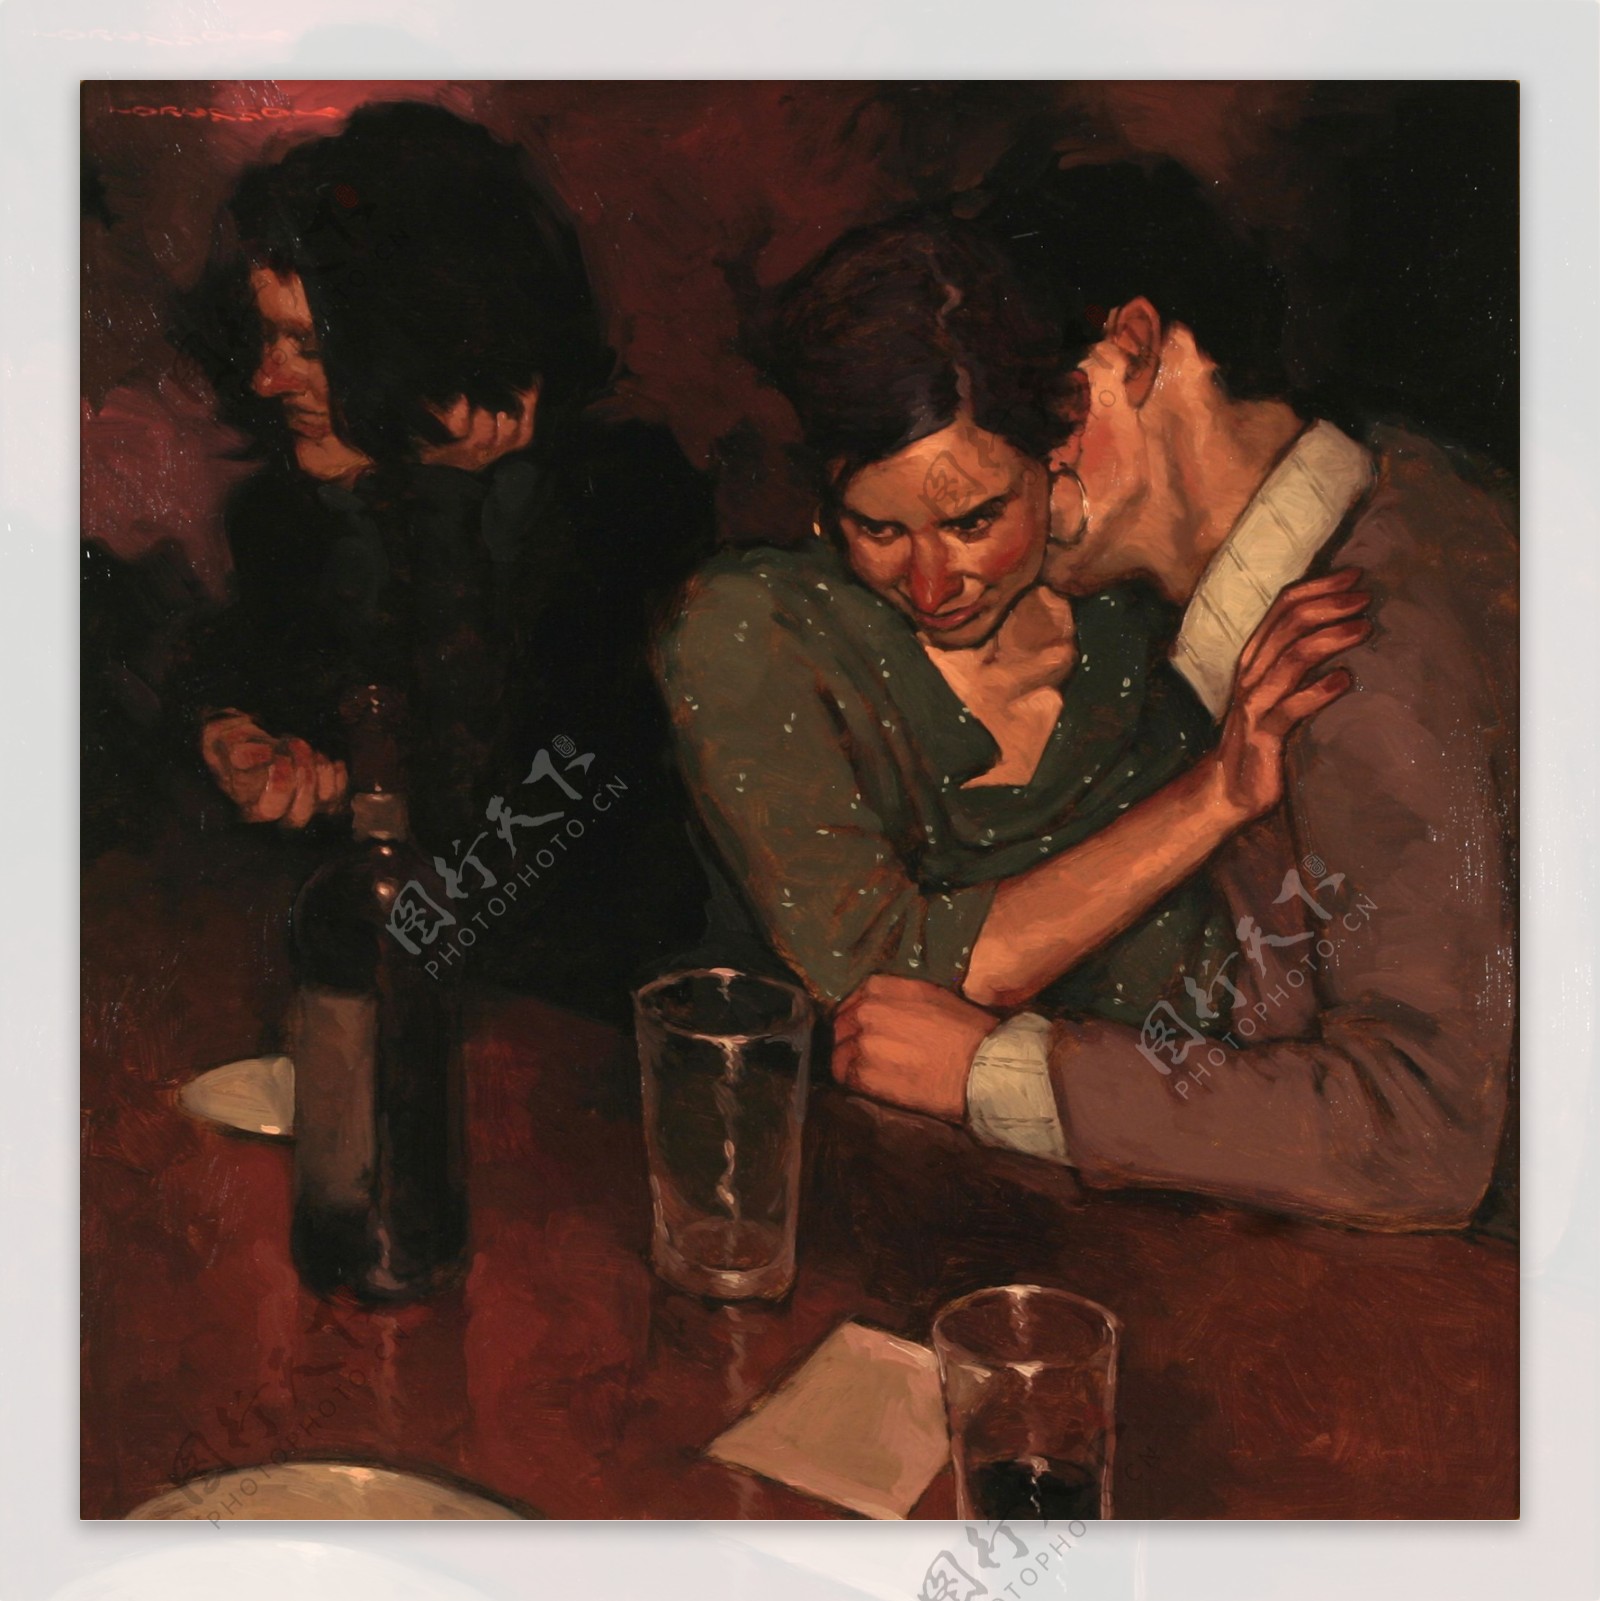 酒吧里的情侣油画图片